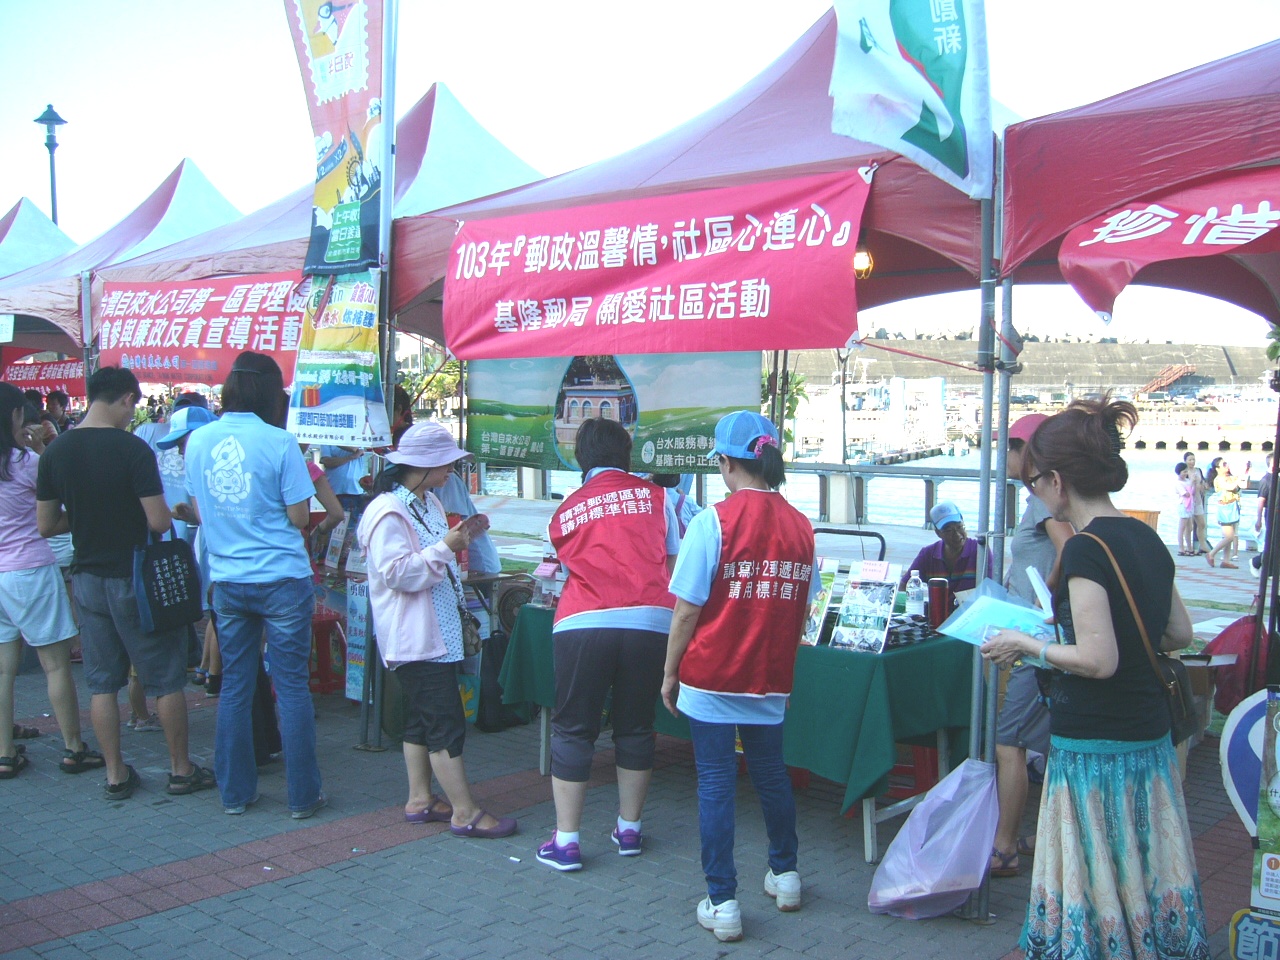 基隆郵局參與「2014基隆鎖管季」嘉年華設攤服務活動